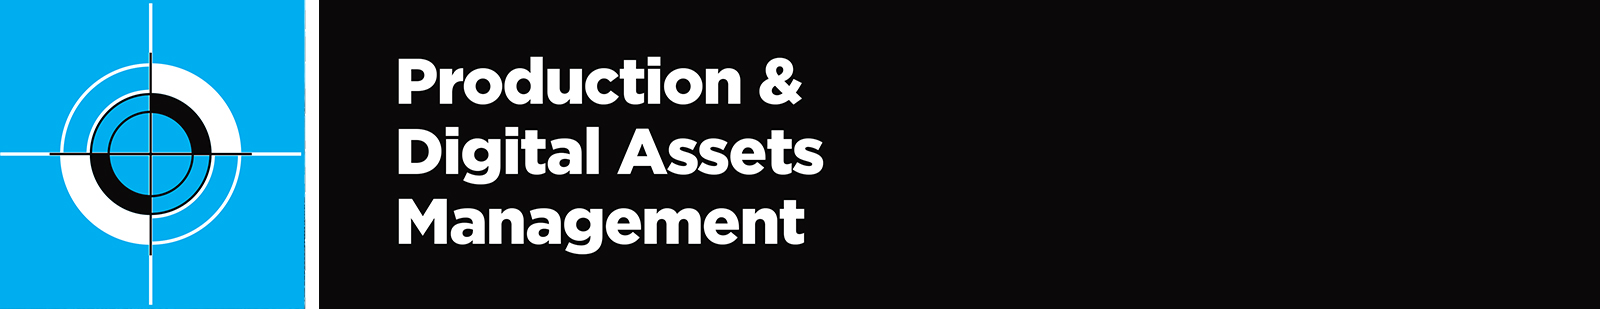 Production & Digital Assets Management